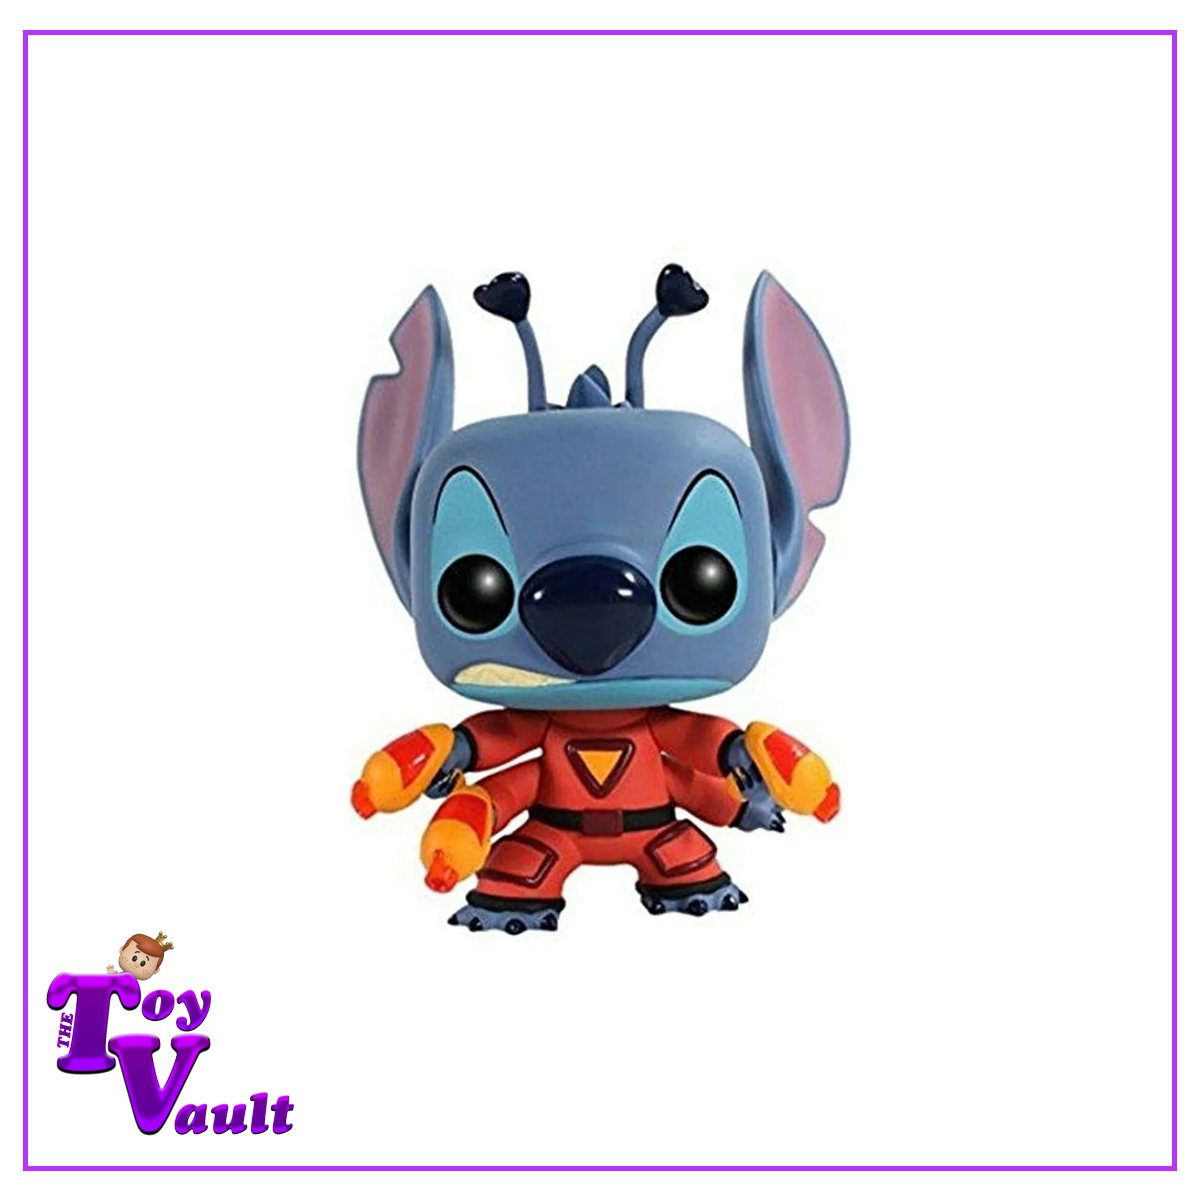 Funko Pop! Disney Lilo and Stitch - Stitch 626 #125